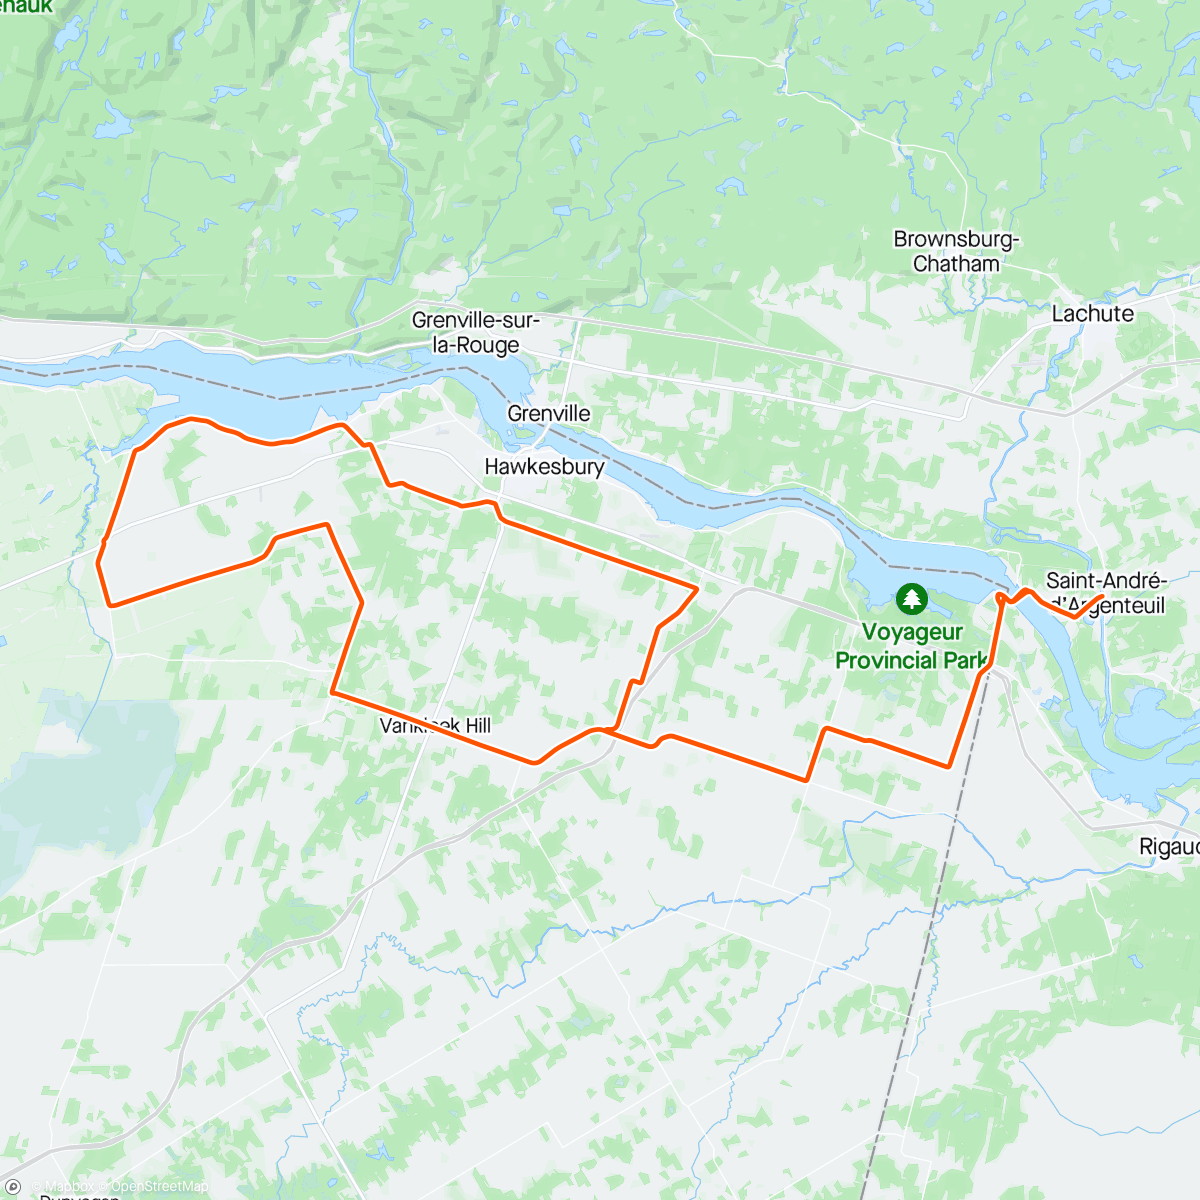 アクティビティ「Dimanche VP en Ontario 🚴‍♂️🚴‍♂️🚴‍♂️🚴‍♂️🚴‍♀️🚴‍♂️🚴‍♂️🚴‍♂️🚴‍♂️」の地図